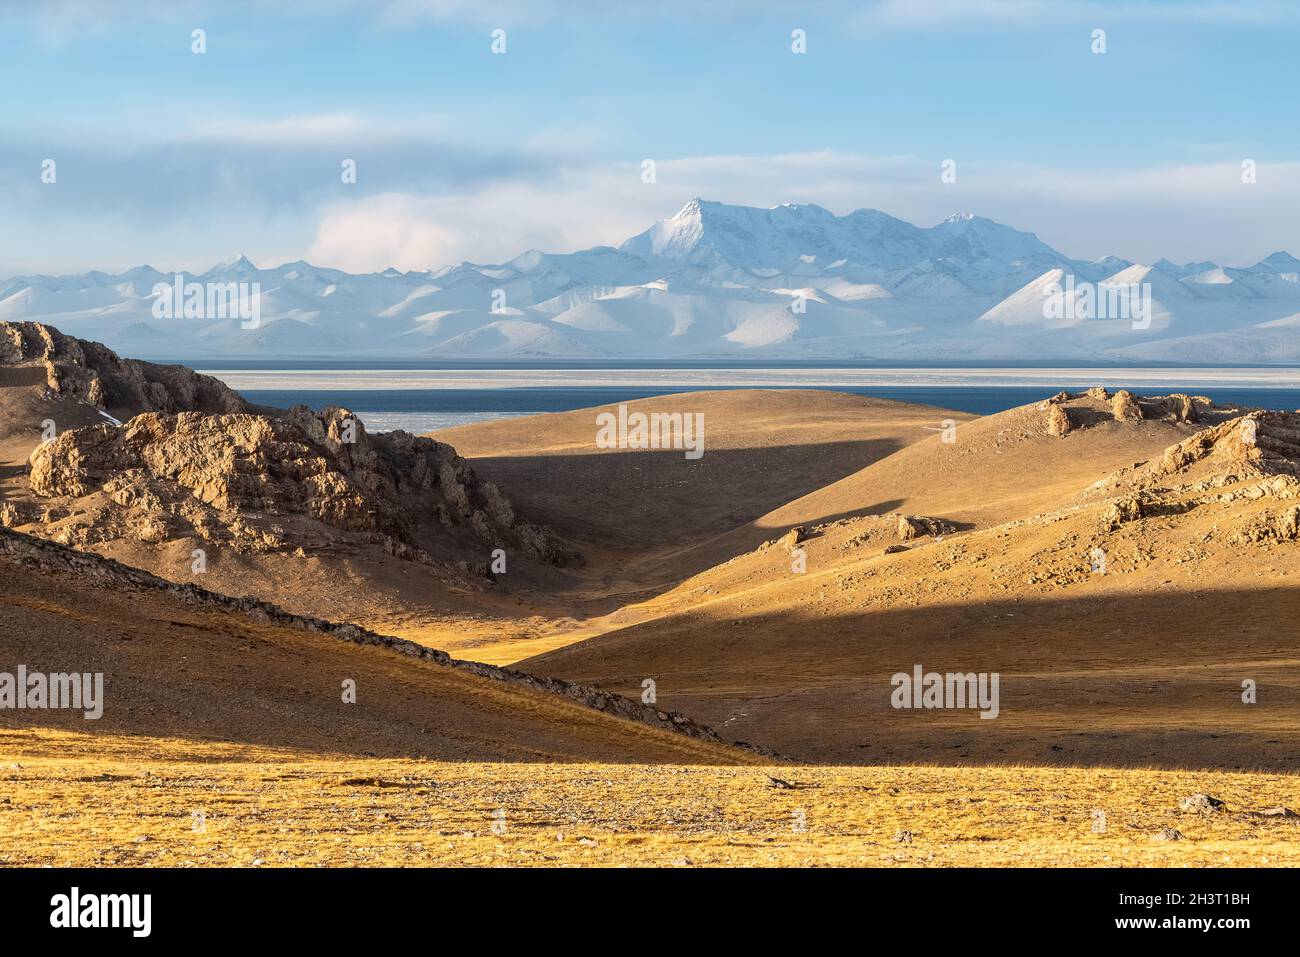 Plateau du Tibet paysage de lac Saint et de montagne enneigée Banque D'Images